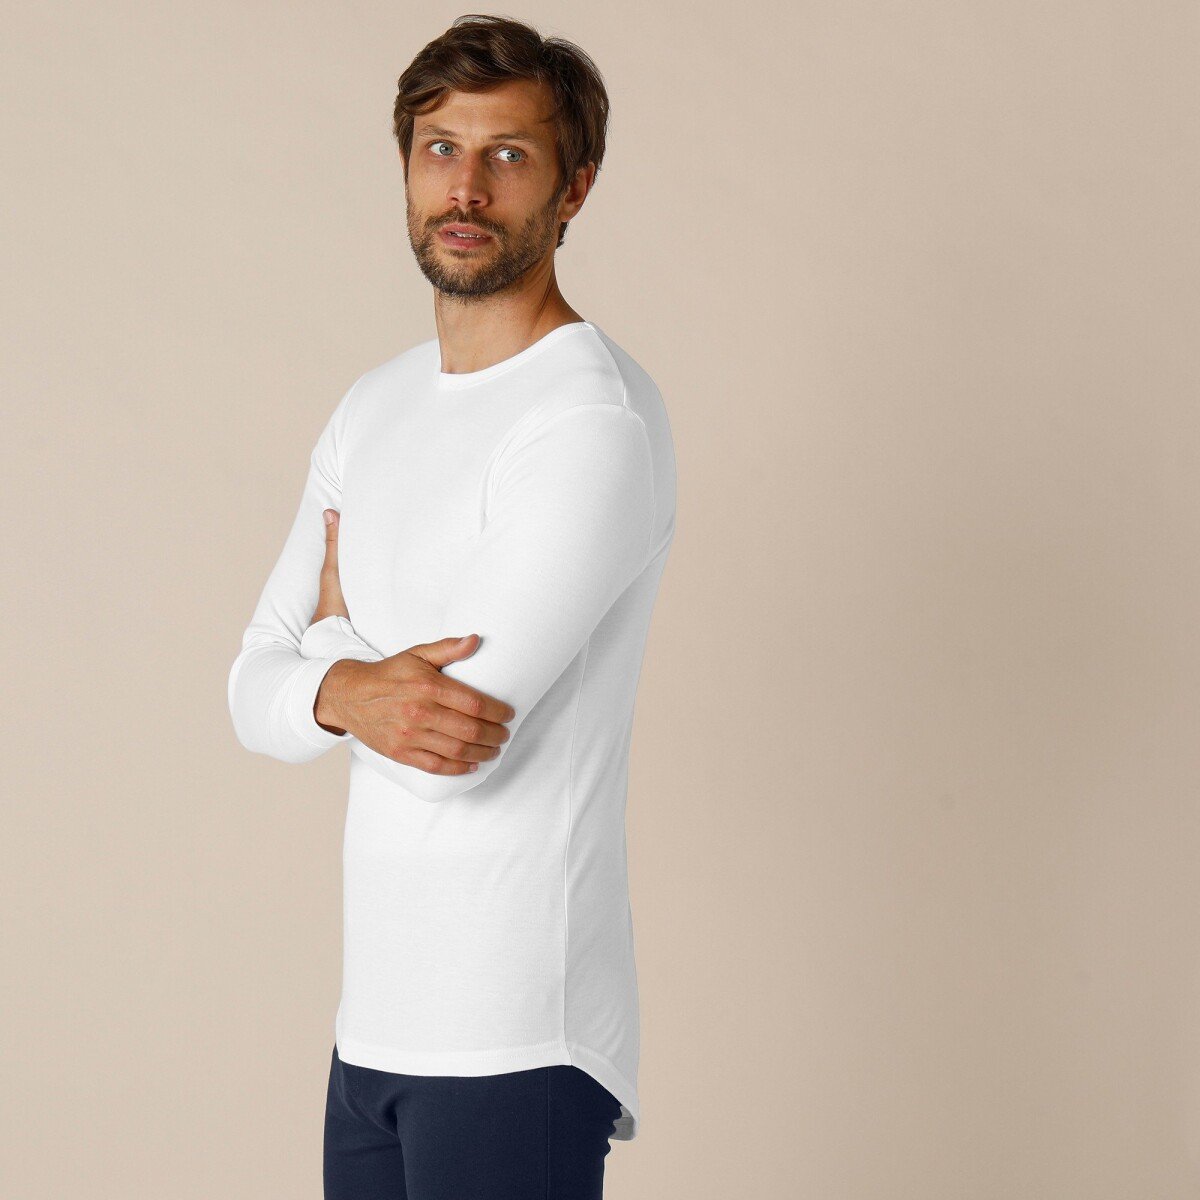 Spodné tričko s dlhými rukávmi z polyesteru, súprava 2 ks biela 85 92 (M)